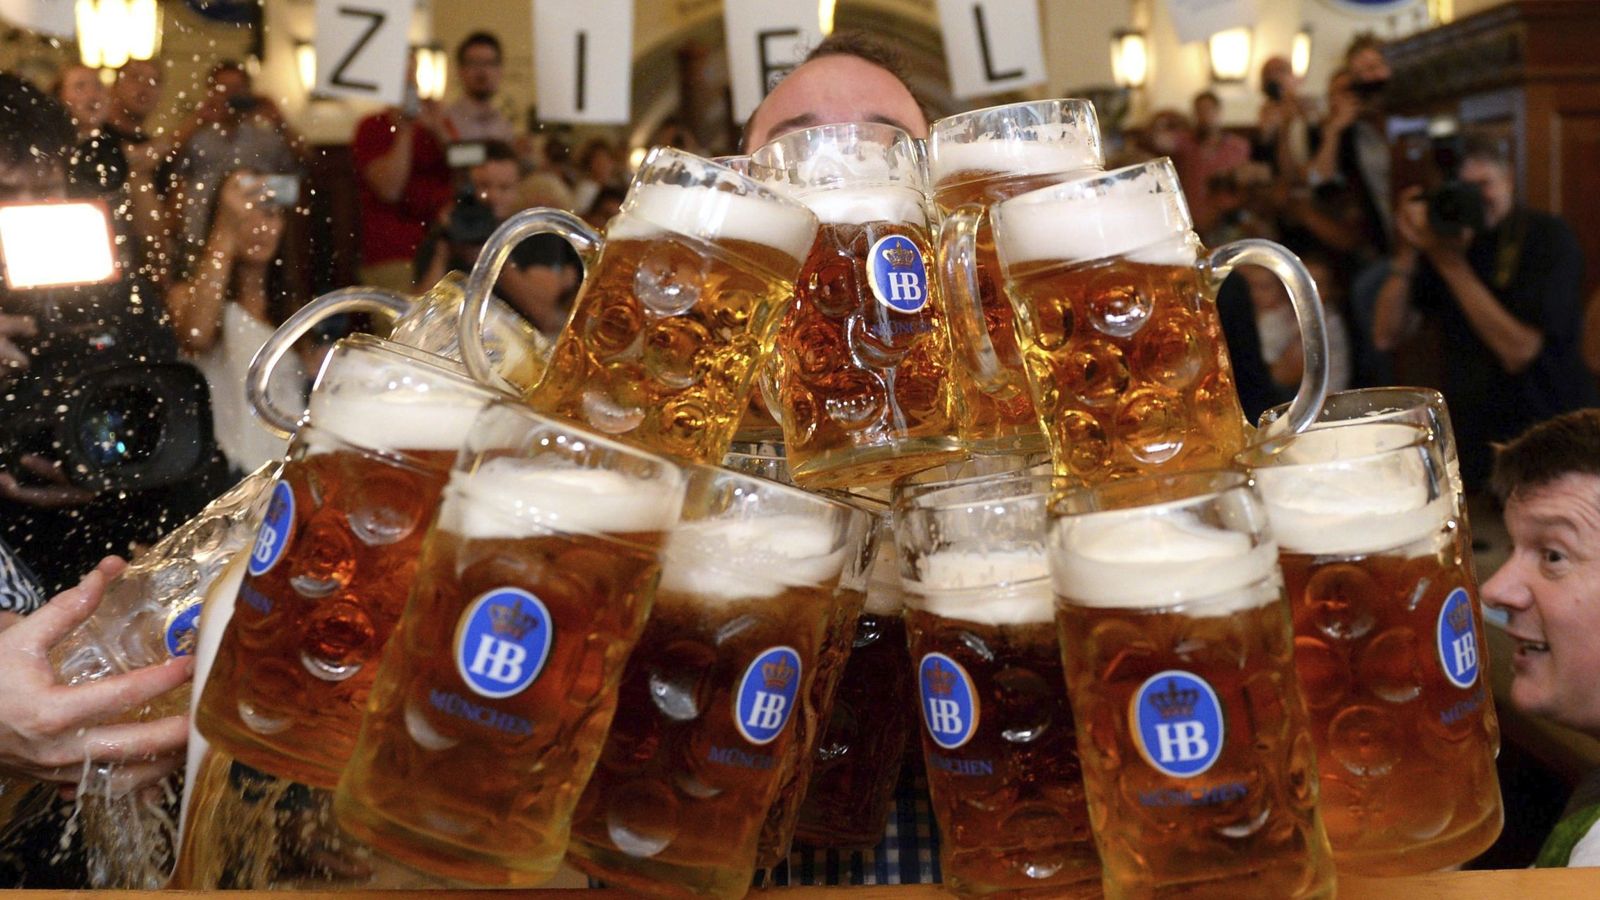 un-aleman-bate-el-record-mundial-transportando--jarras-de-cerveza-a-la-vez